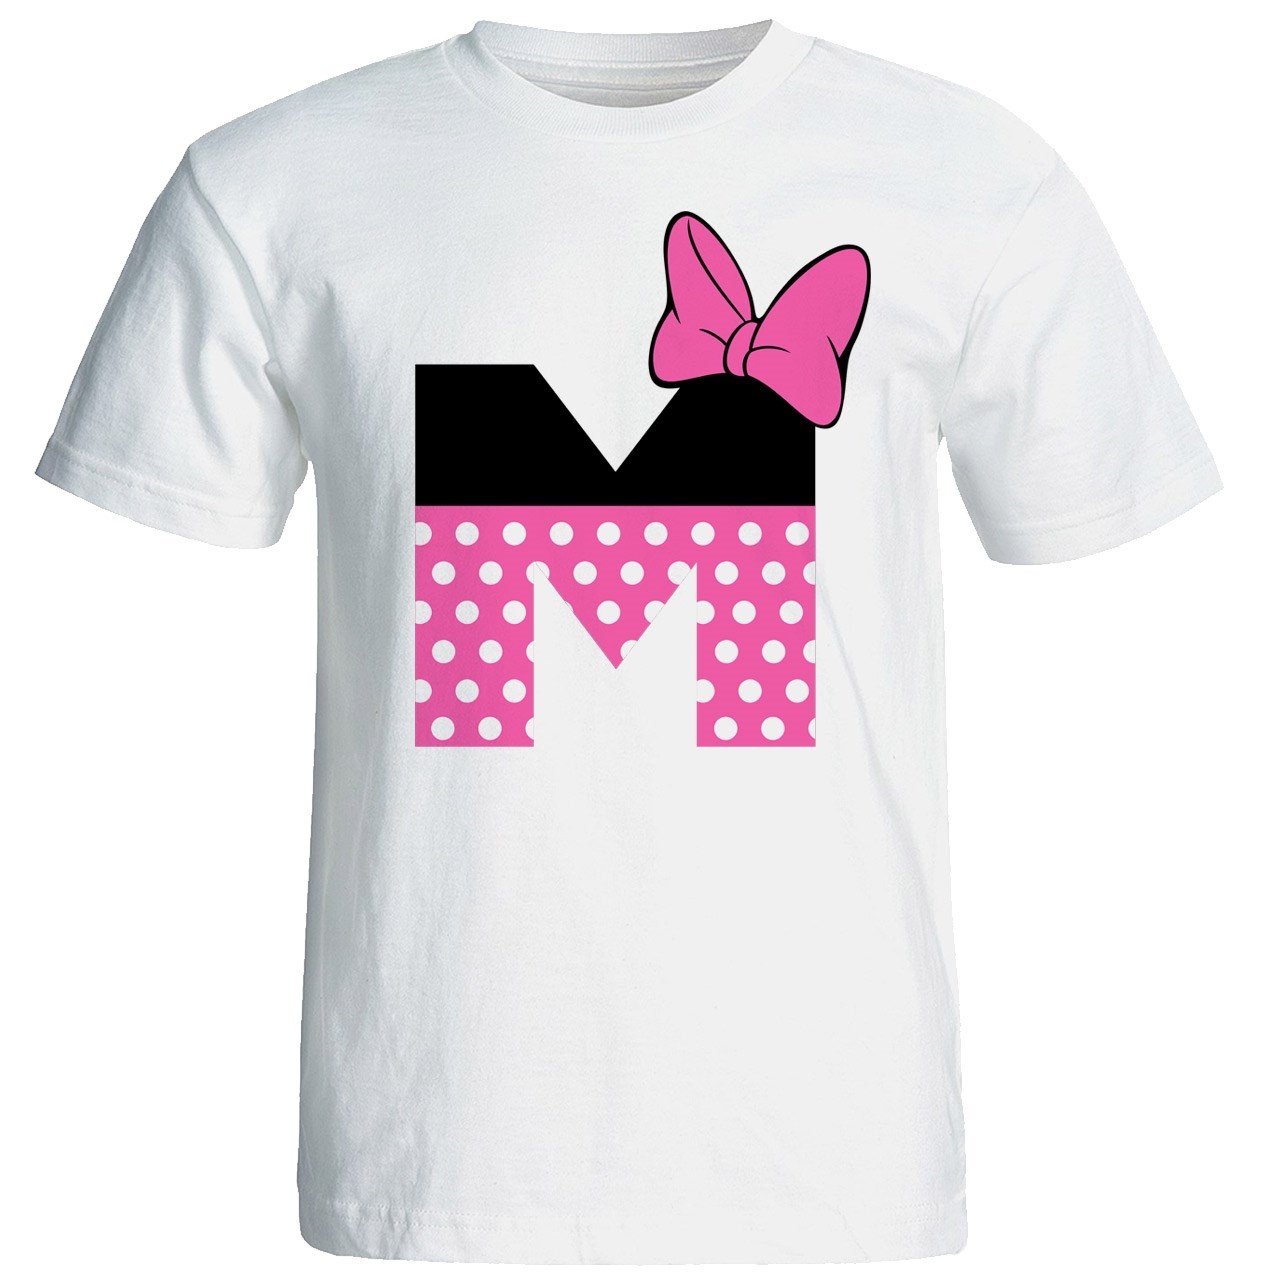 تی شرت آستین کوتاه زنانه شین دیزاین طرح میکی موس ام کد 4538